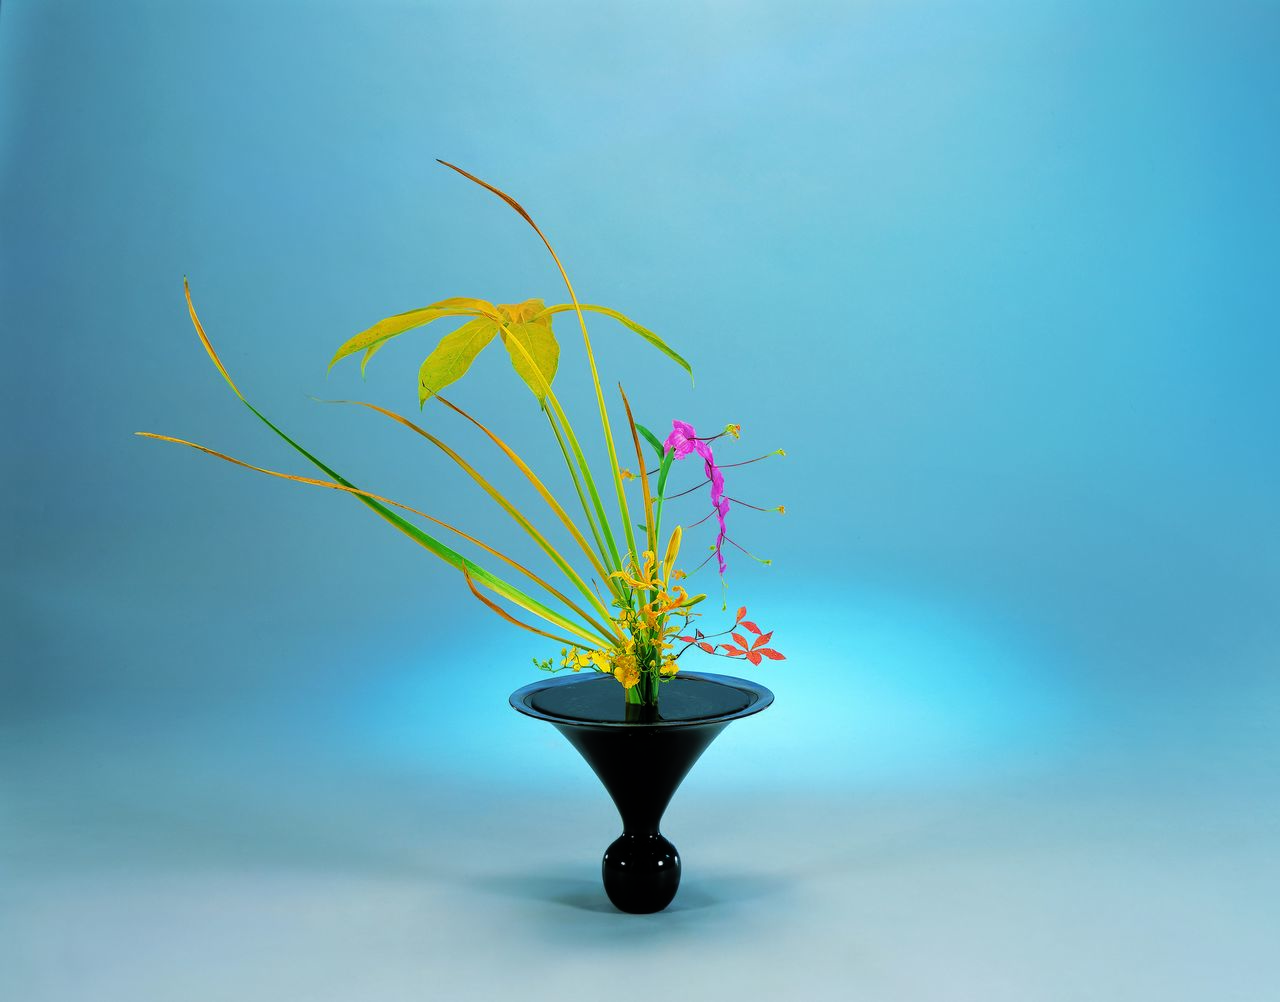 تنسيق زهور وفق أسلوب ريكّا شينبوتاي من قبل مدير مدرسة إيكينوبو سانيي الخامس والأربعين (حقوق الصورة لإيكينوبو كادوكاي).